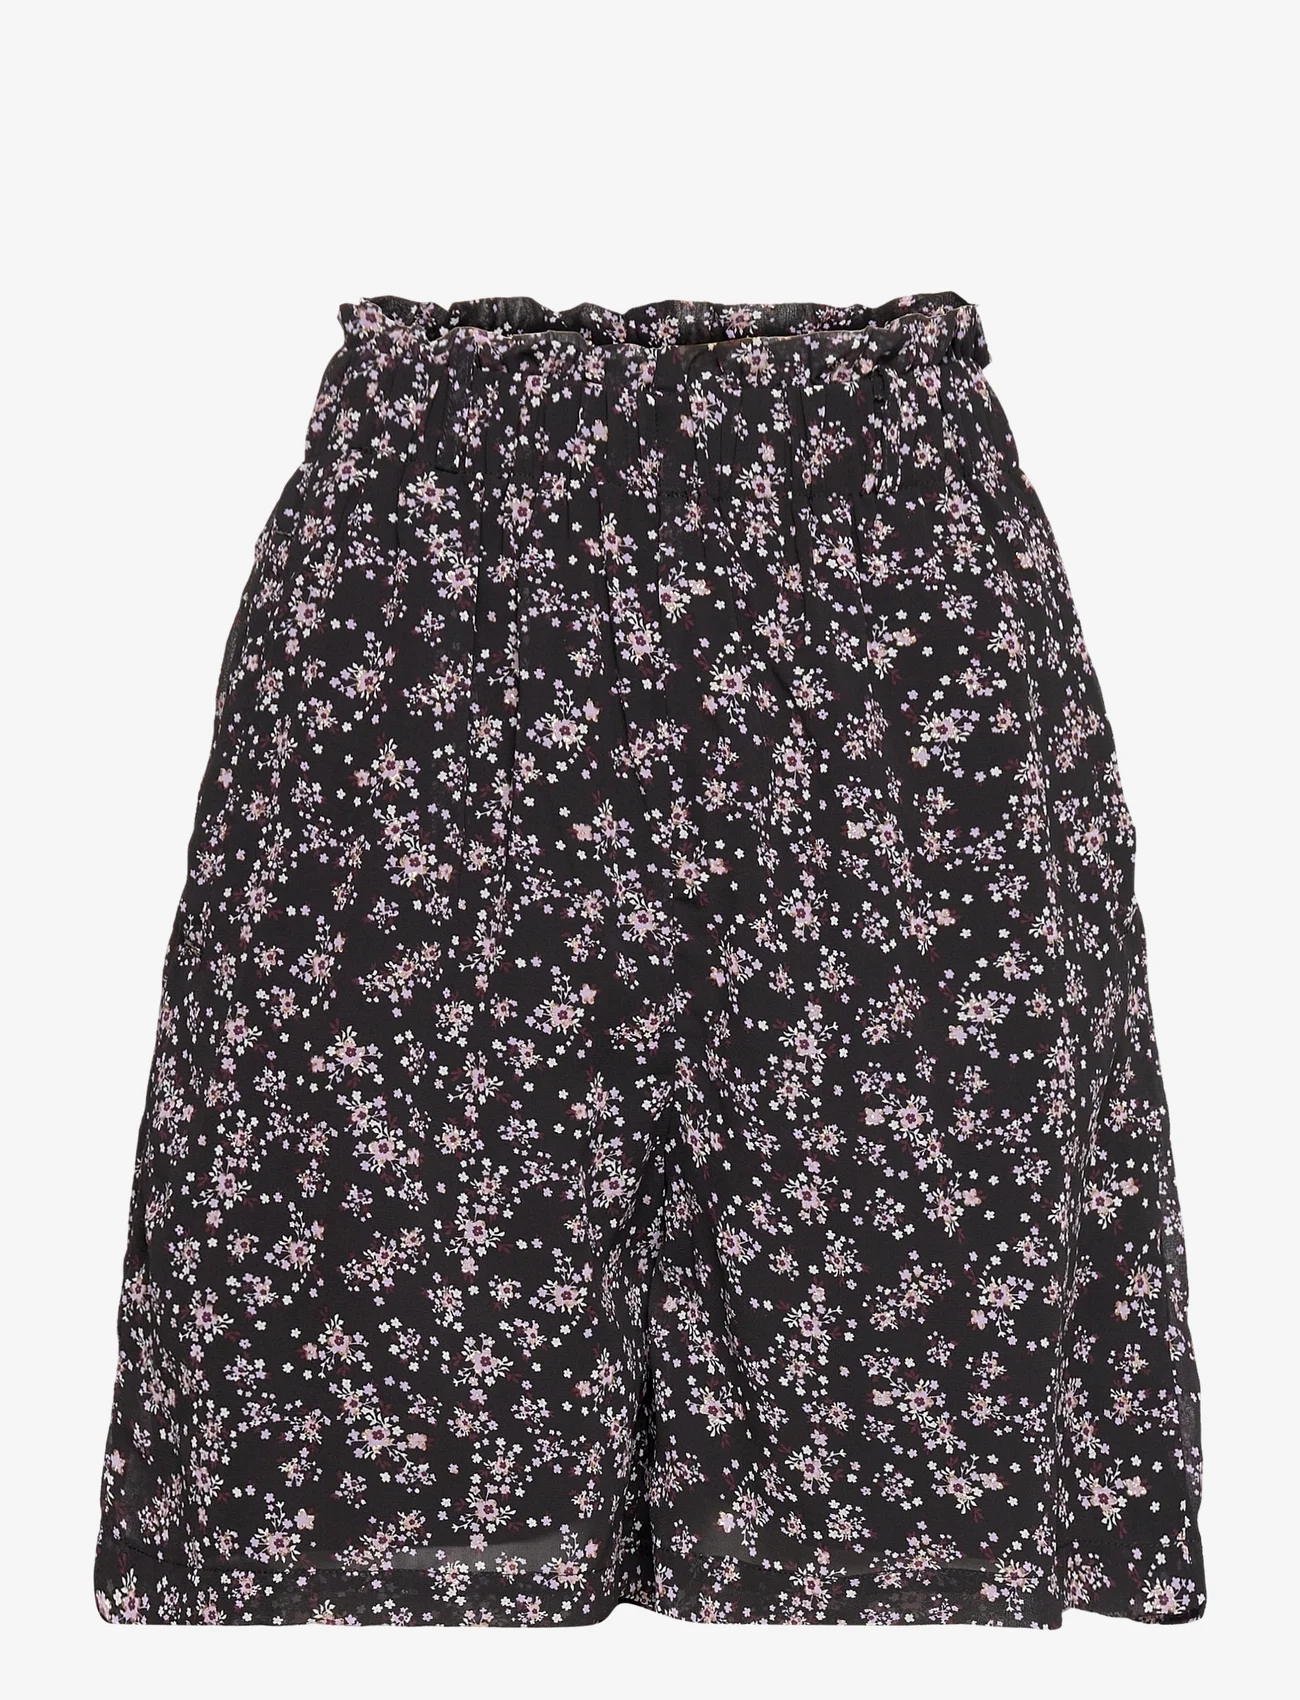 Lollys Laundry - Blanca Shorts - korte skjørt - 99 black - 0